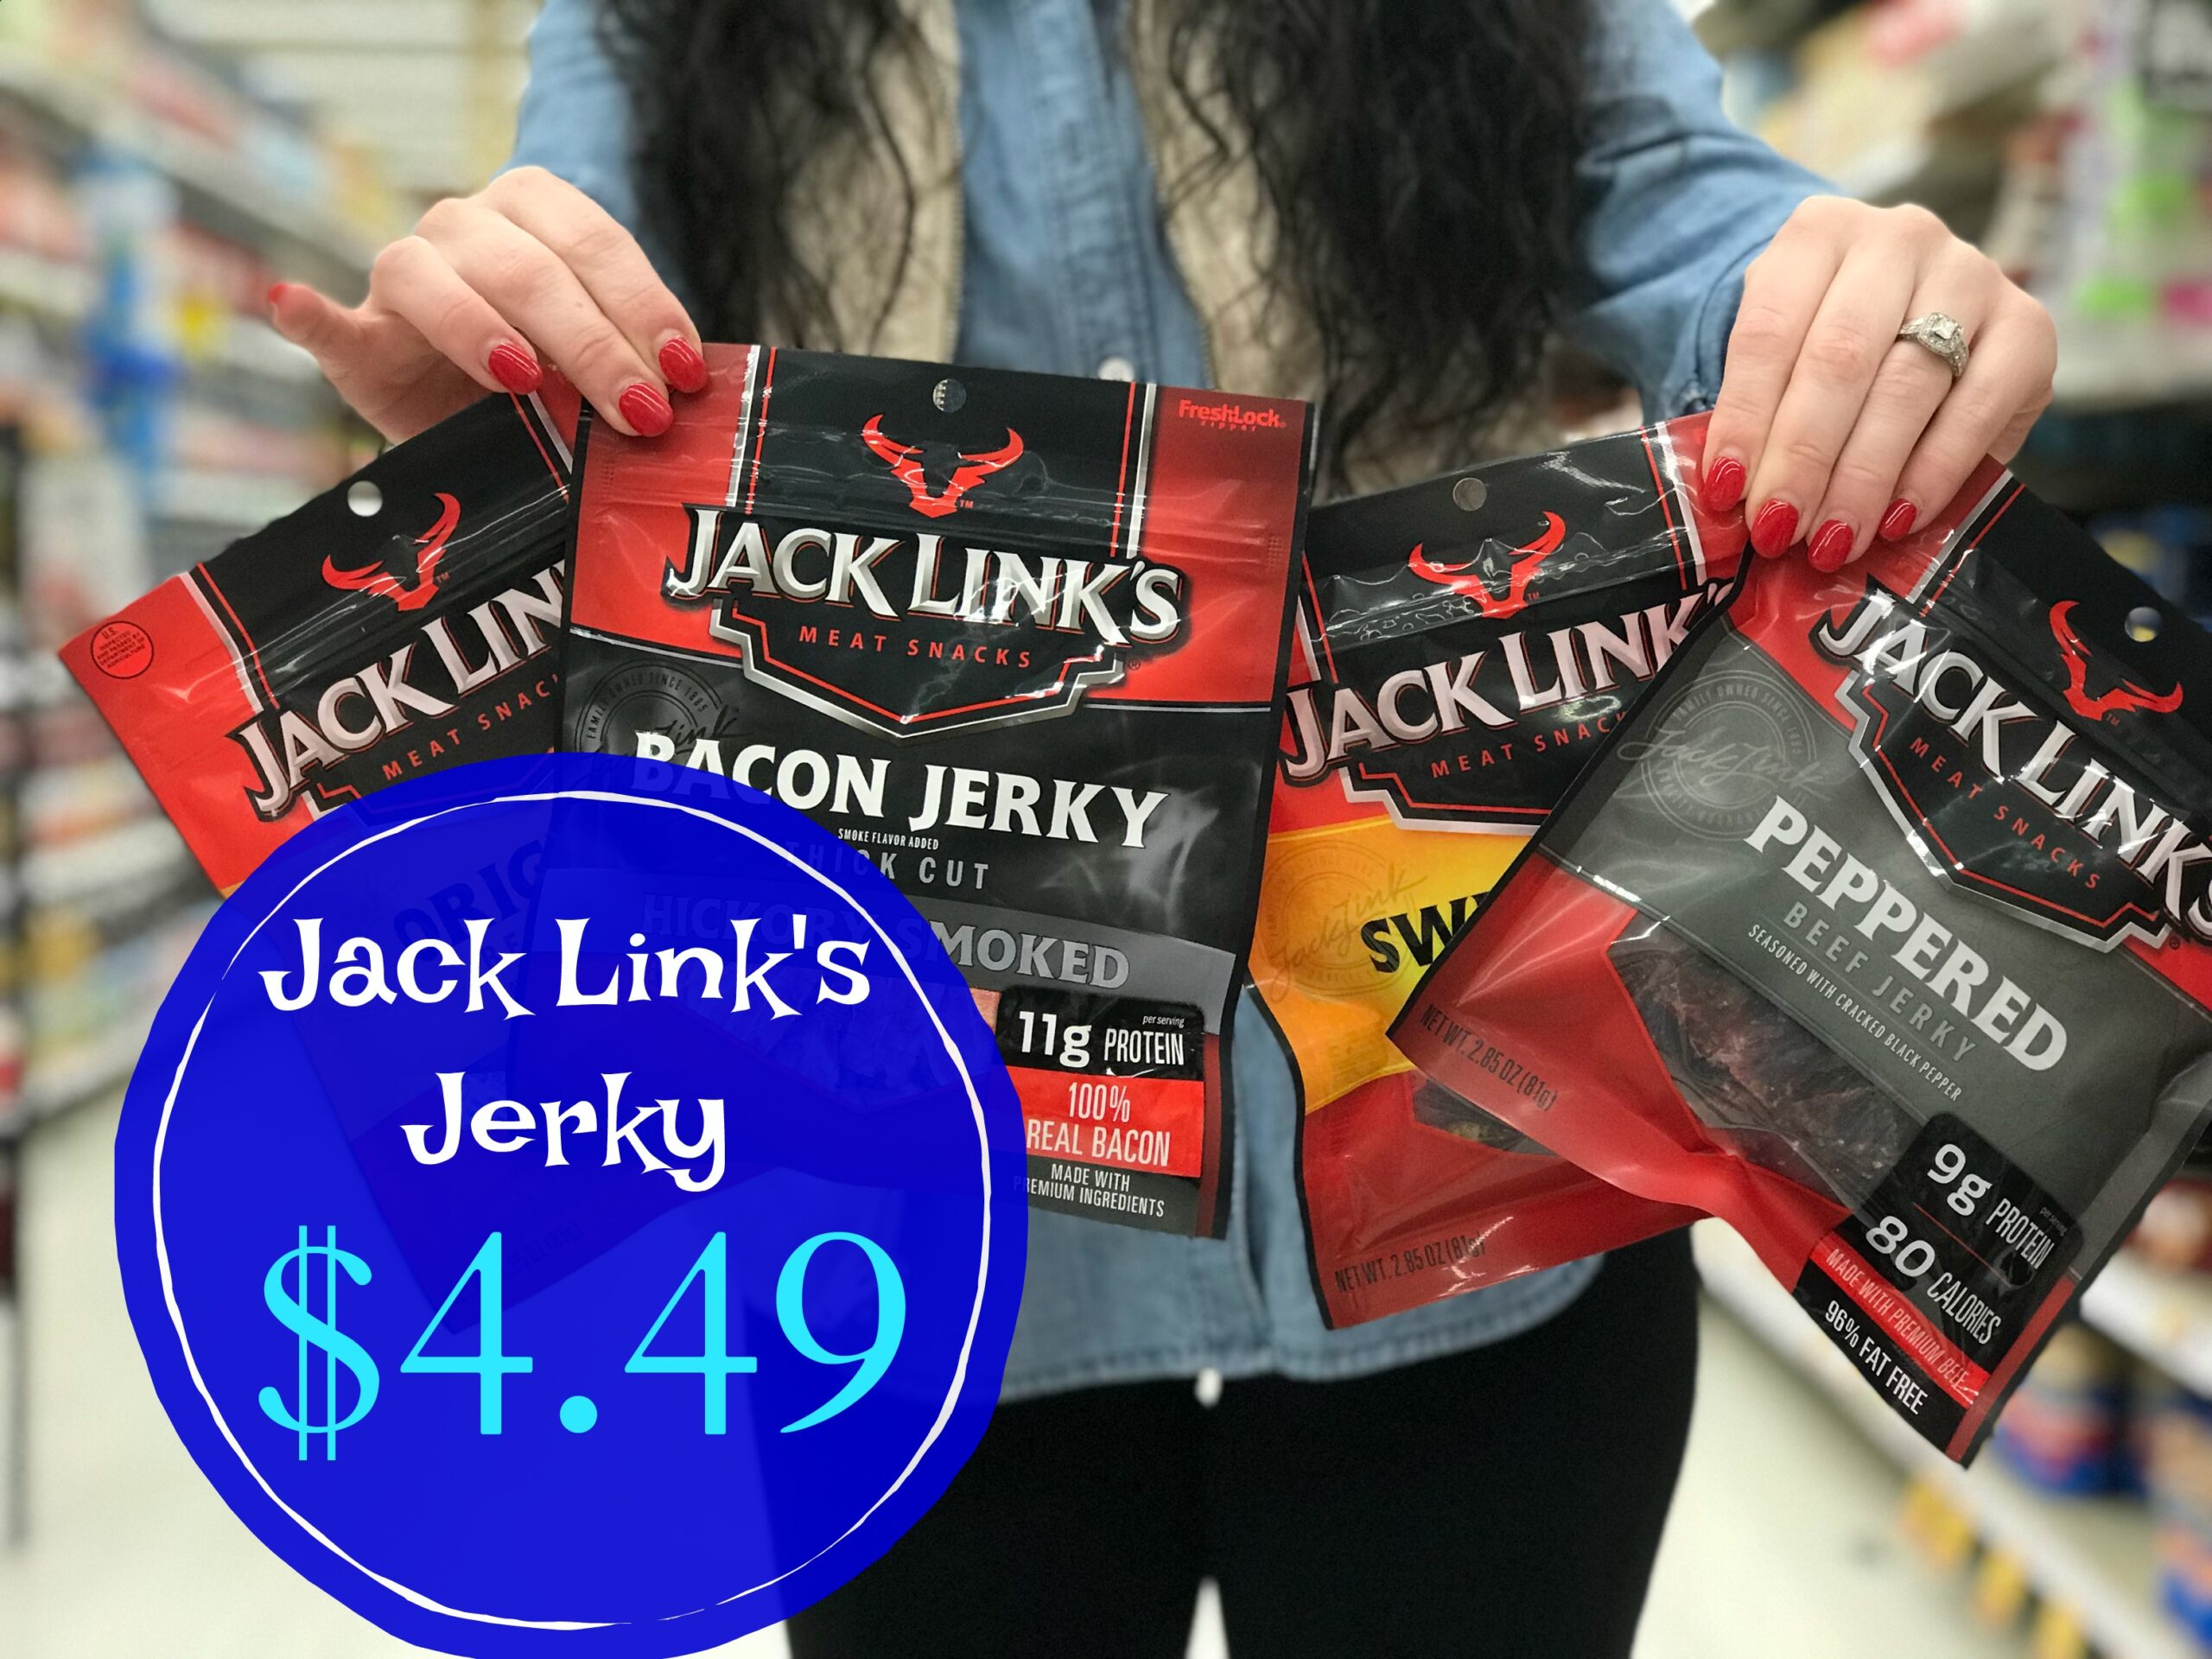 Get Jack Link's Jerky For ONLY 4.49 at Kroger! (Reg Price 6.49